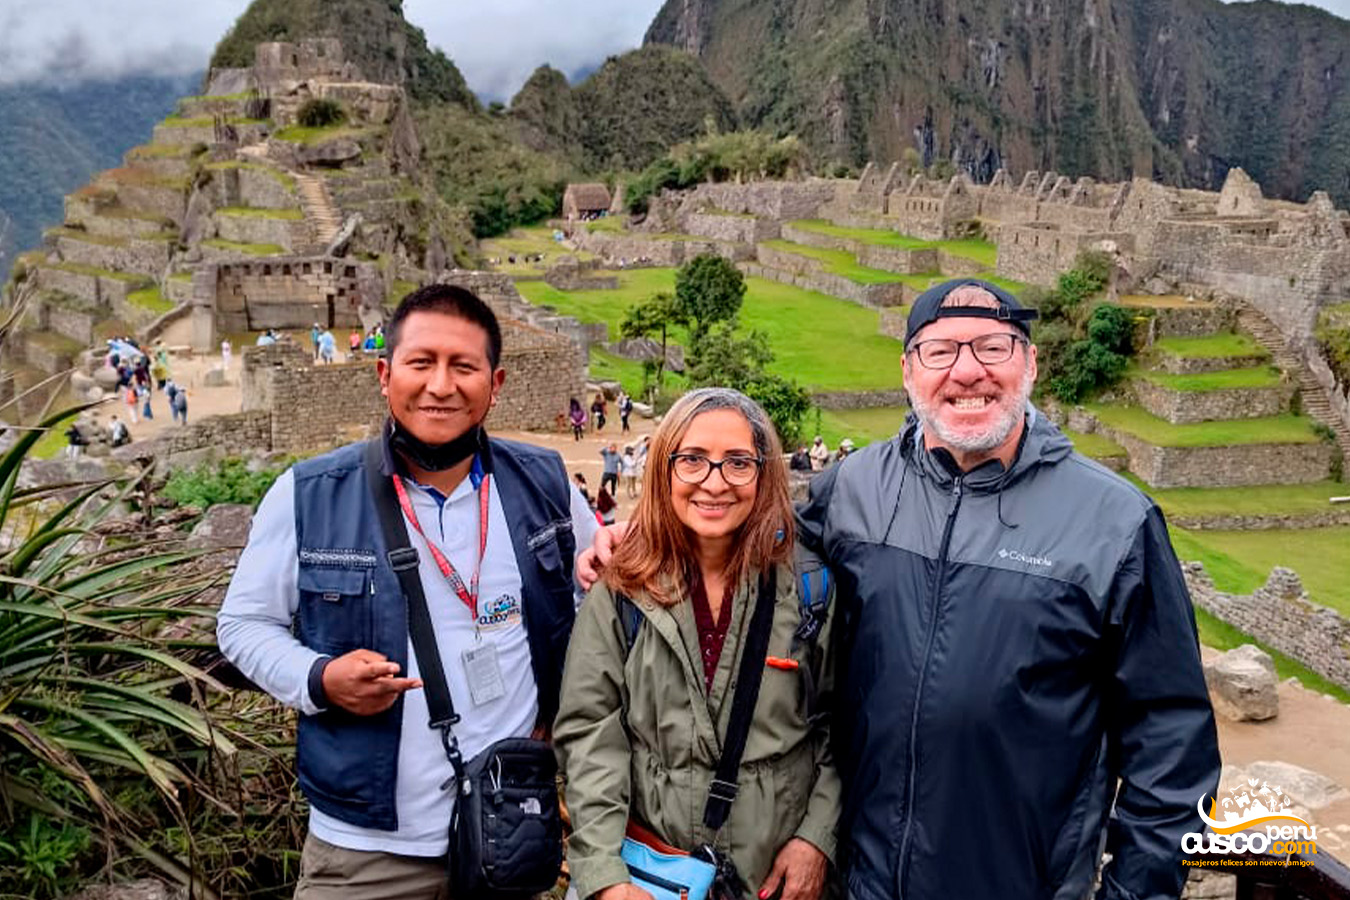 Guided service for two tourists at Machu Picchu. Source: CuscoPeru.com